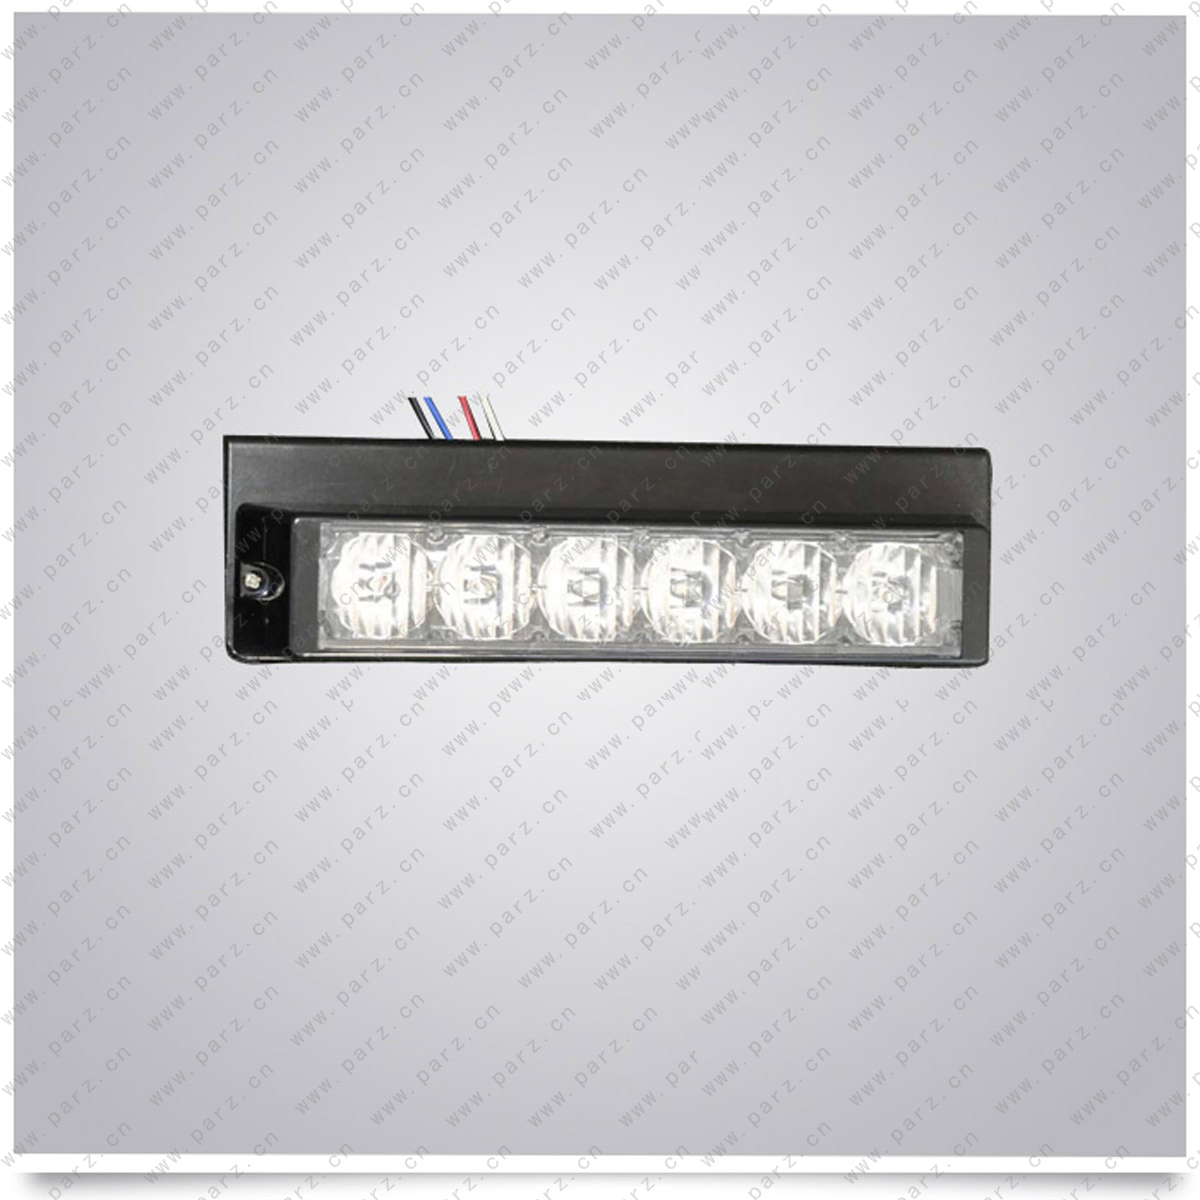 LTD-61B LED light modules